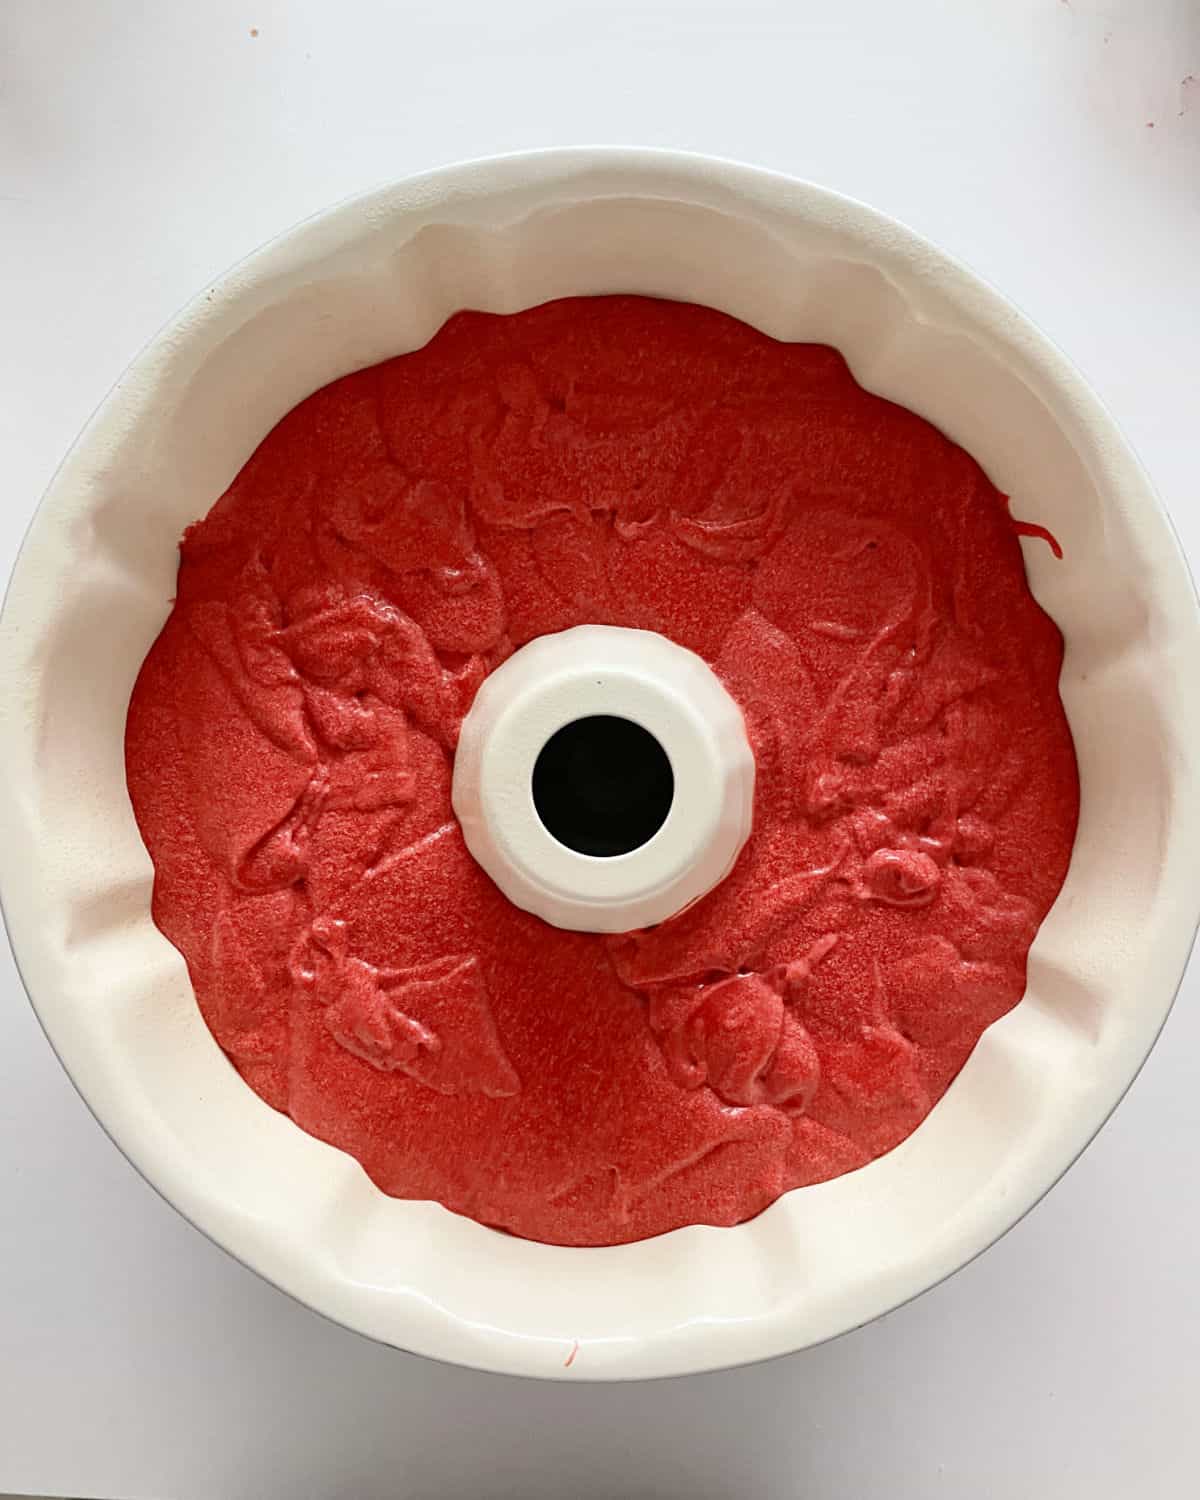 Red velvet cake batter in white bundt pan on white surface; top view.